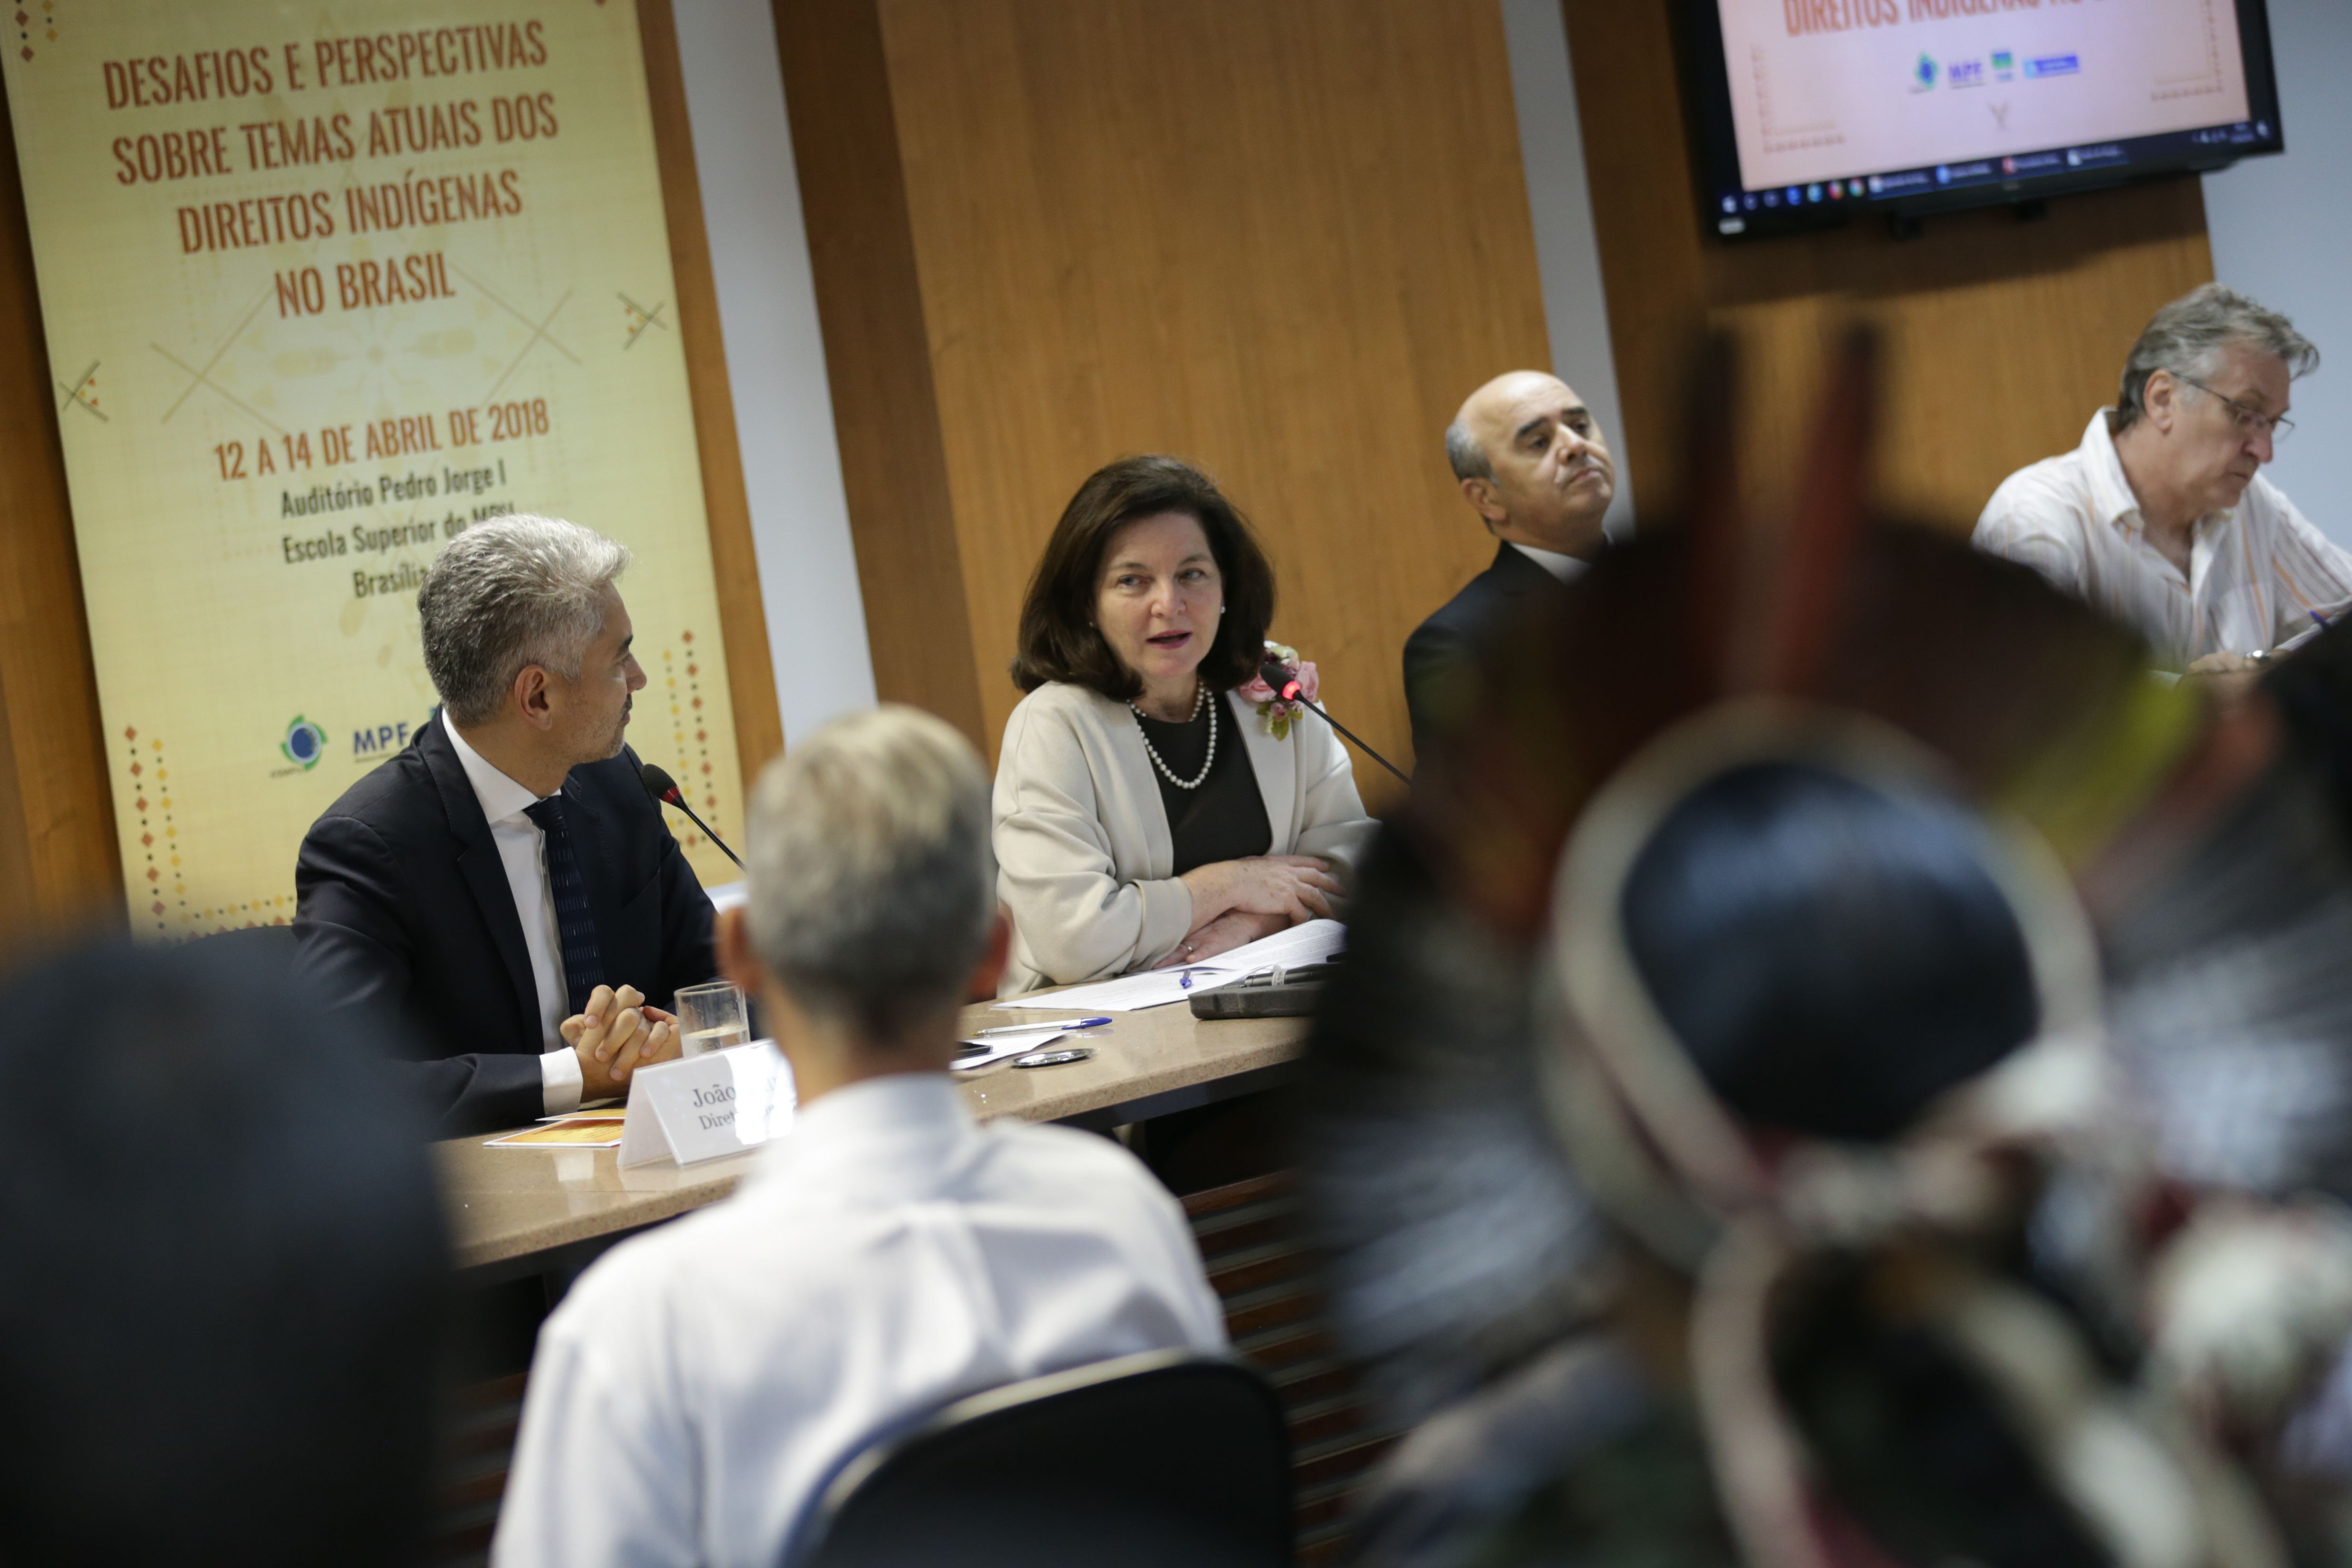 Brasília - A procuradora-geral da República, Raquel Dodge, abre o seminário Desafios e Perspectivas sobre Temas Atuais dos Direitos Indígenas no Brasil (Fabio Rodrigues Pozzebom/Agência Brasil)